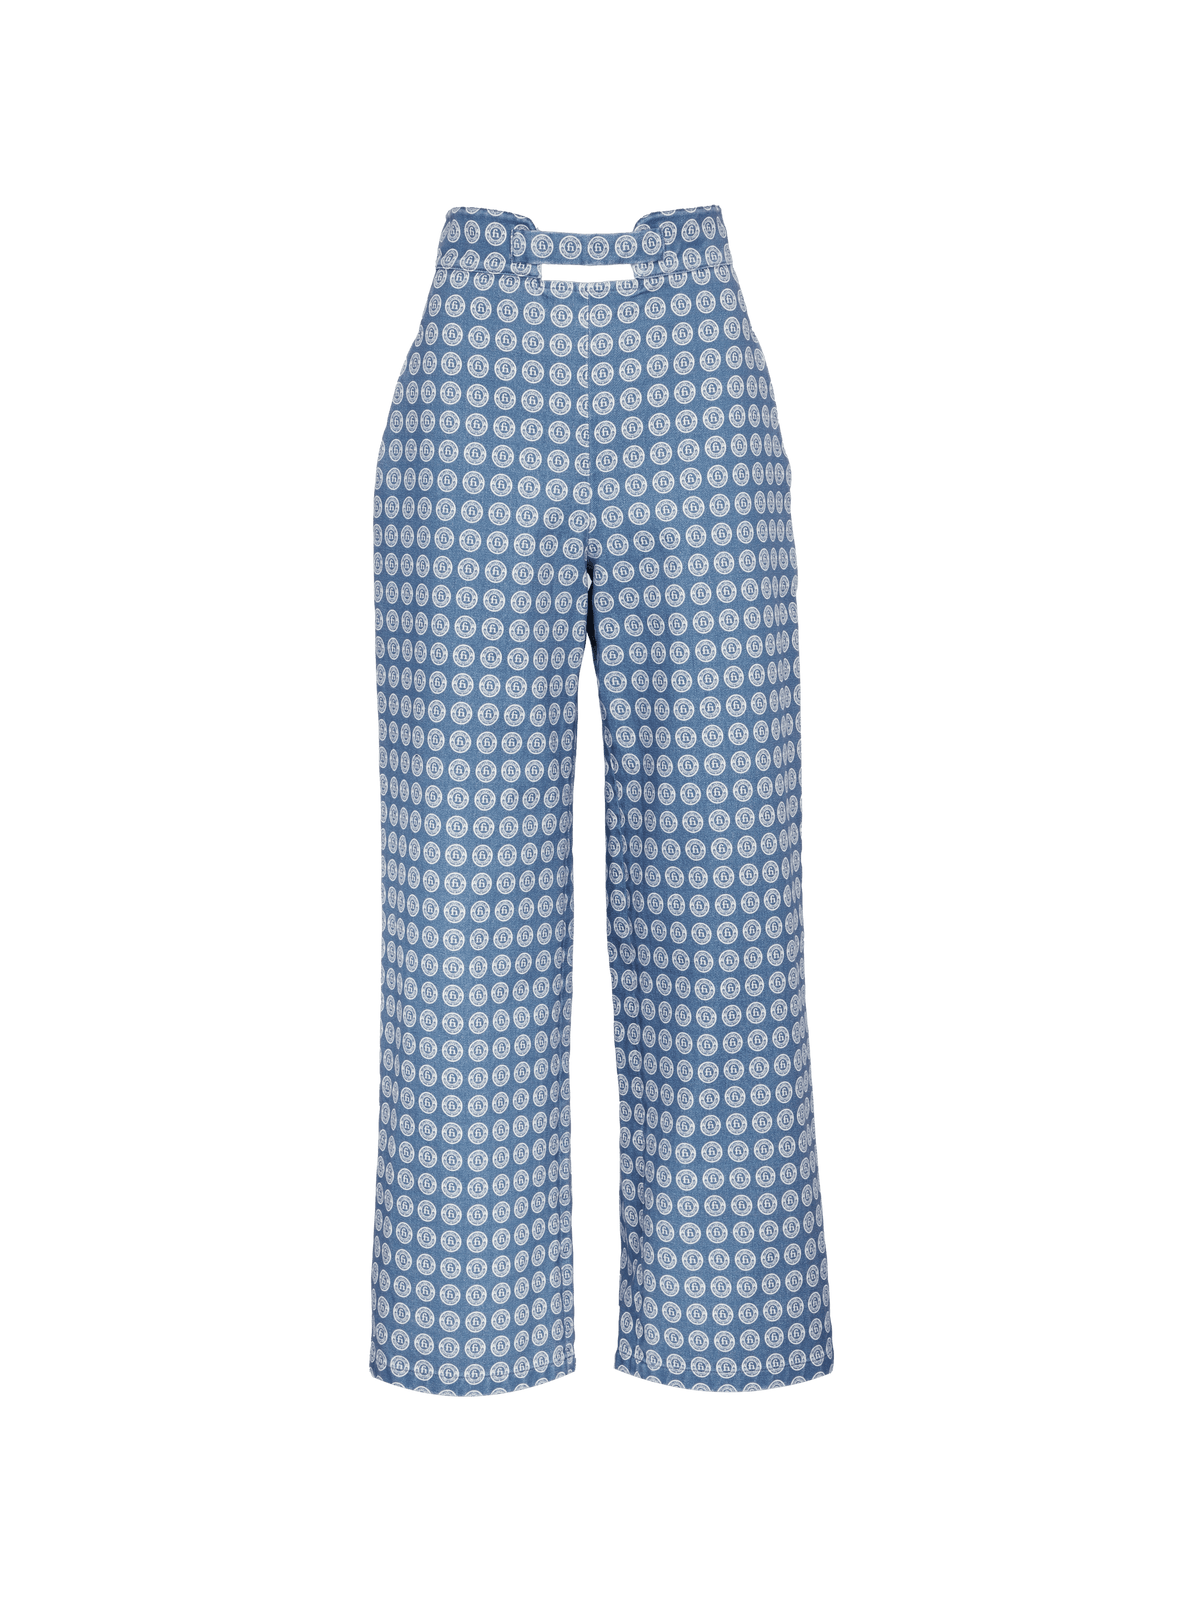 ACIS - Pantalon taille haute en toile de coton bleu imprimé blason blanc Pantalon Fête Impériale